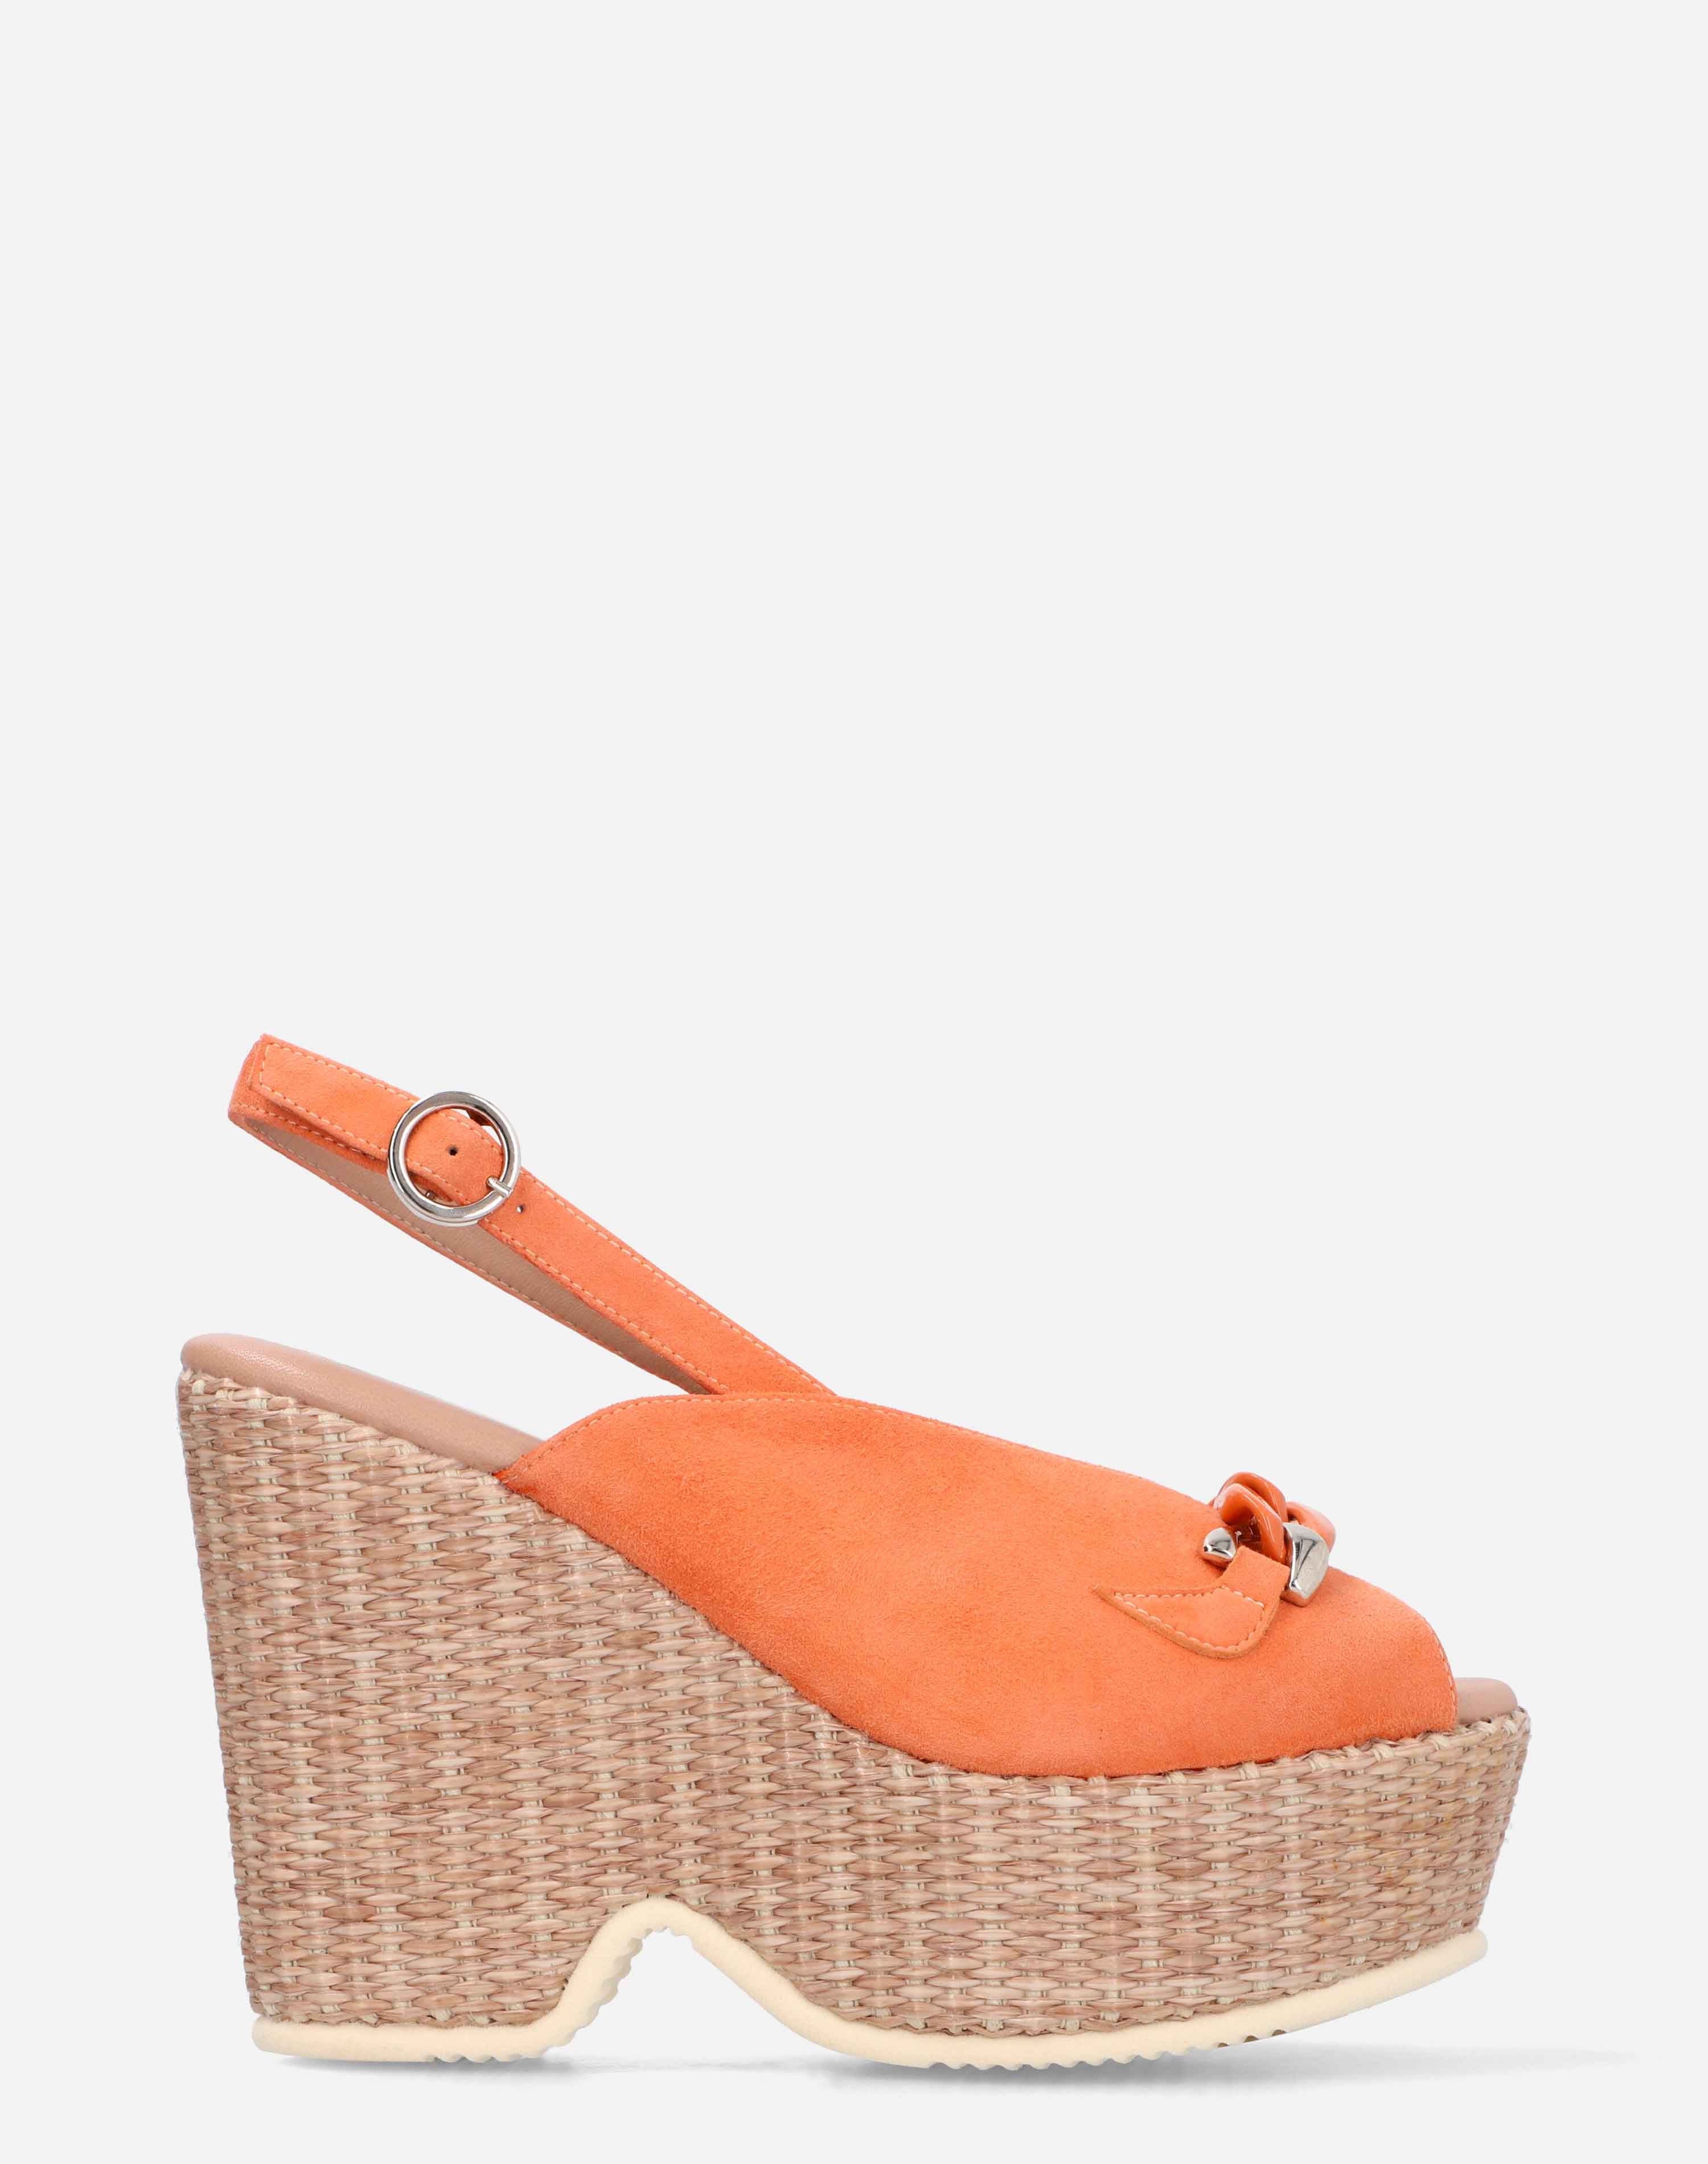 Sandalia peep toe con plataforma en ante color naranja